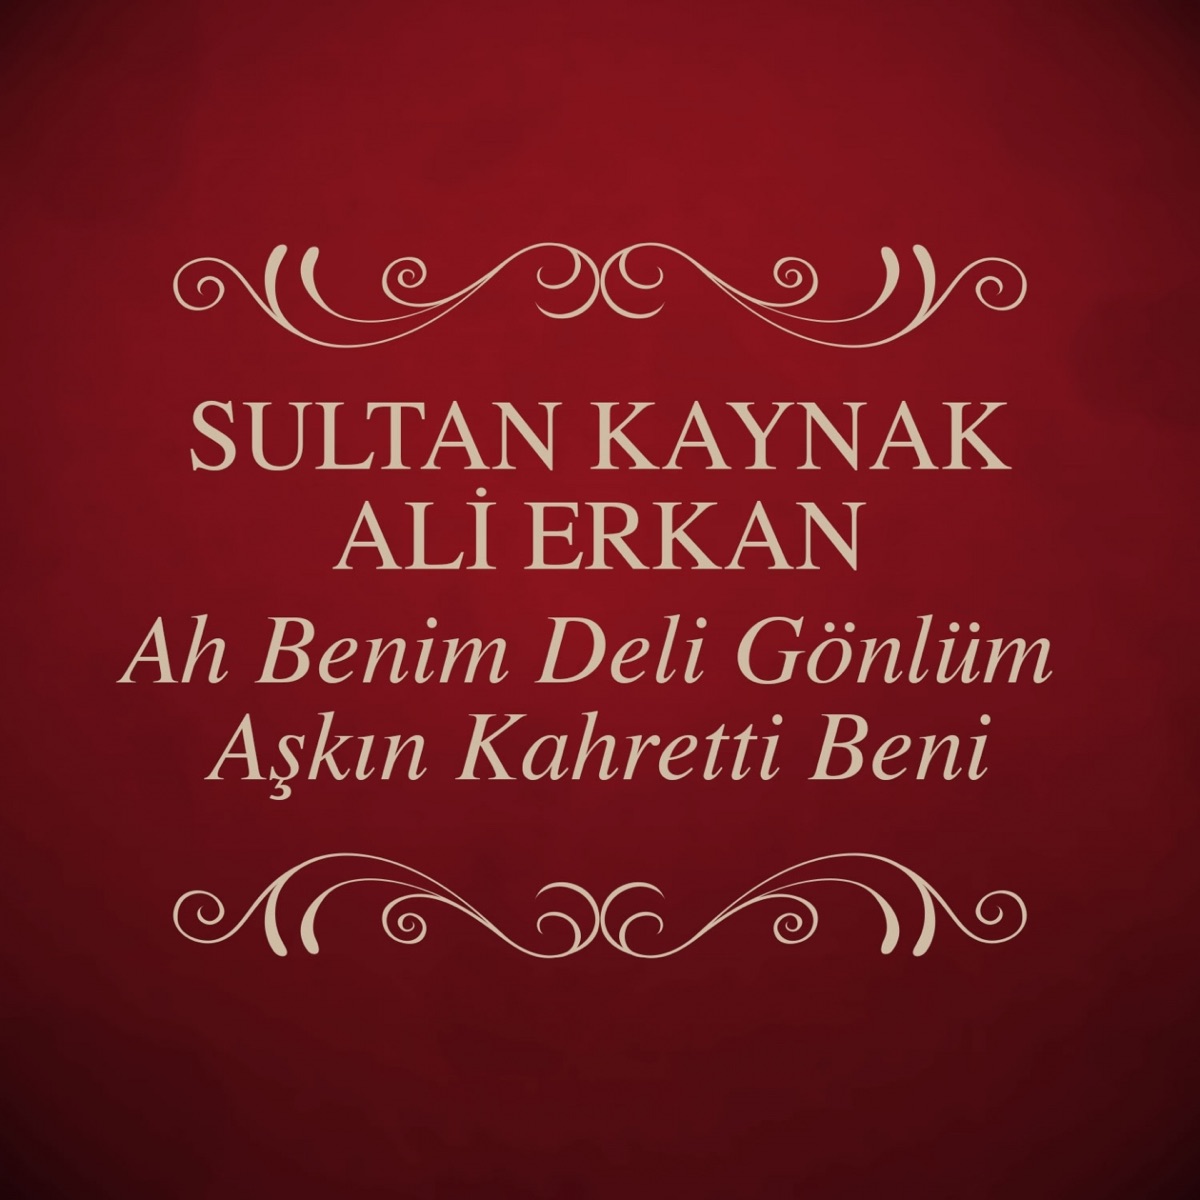 Ah Benim Deli Gönlüm / Aşkın Kahretti Beni by Sultan Kaynak & Ali Erkan on  Apple Music